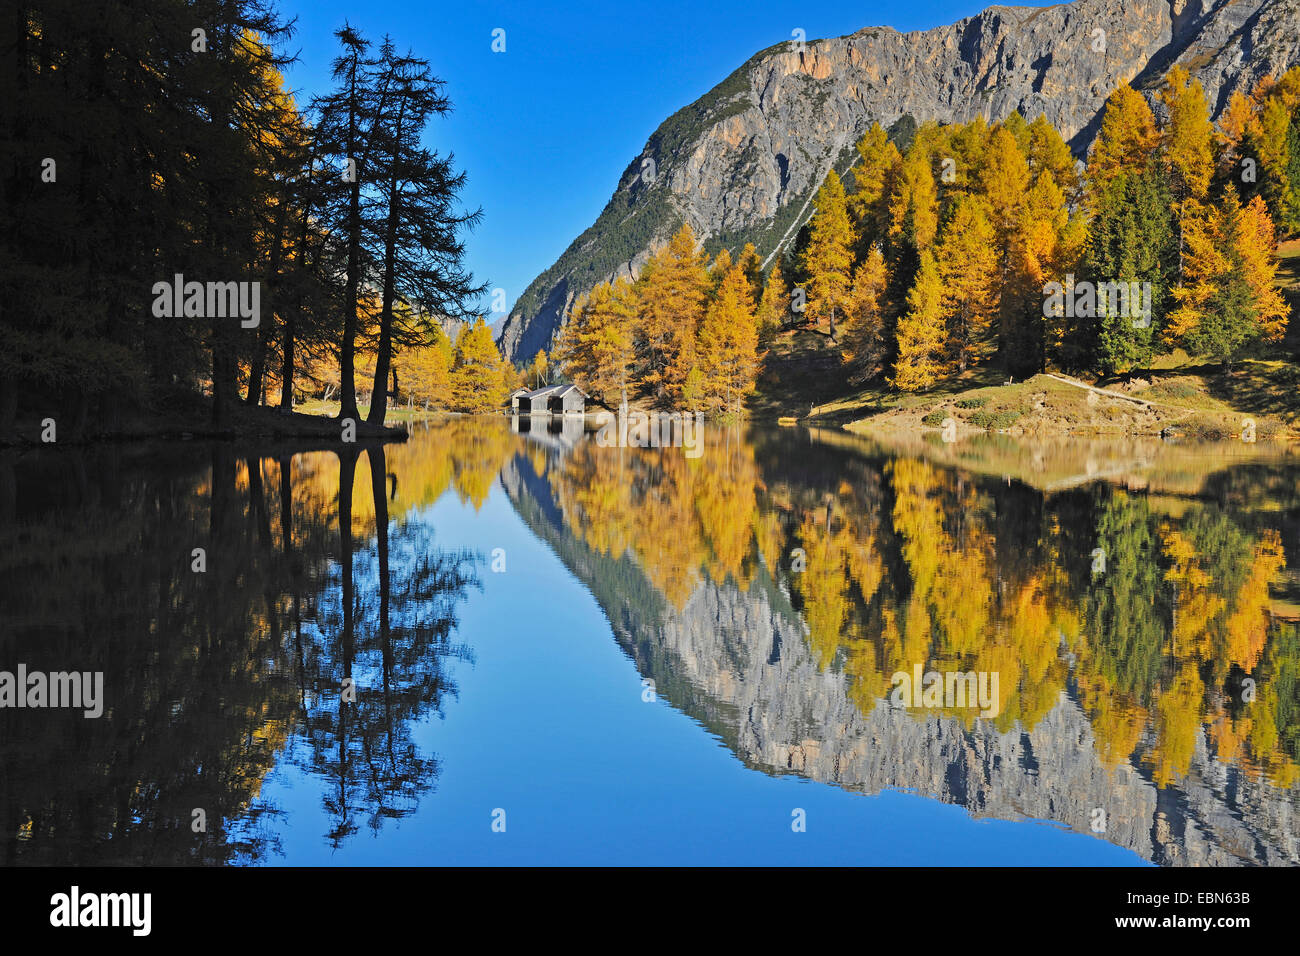 Herbstliche Lärchen spiegeln sich im Palpuogna-See, Lei da Palpuogna,  Albulapass, Graubünden, Schweiz Stockfotografie - Alamy